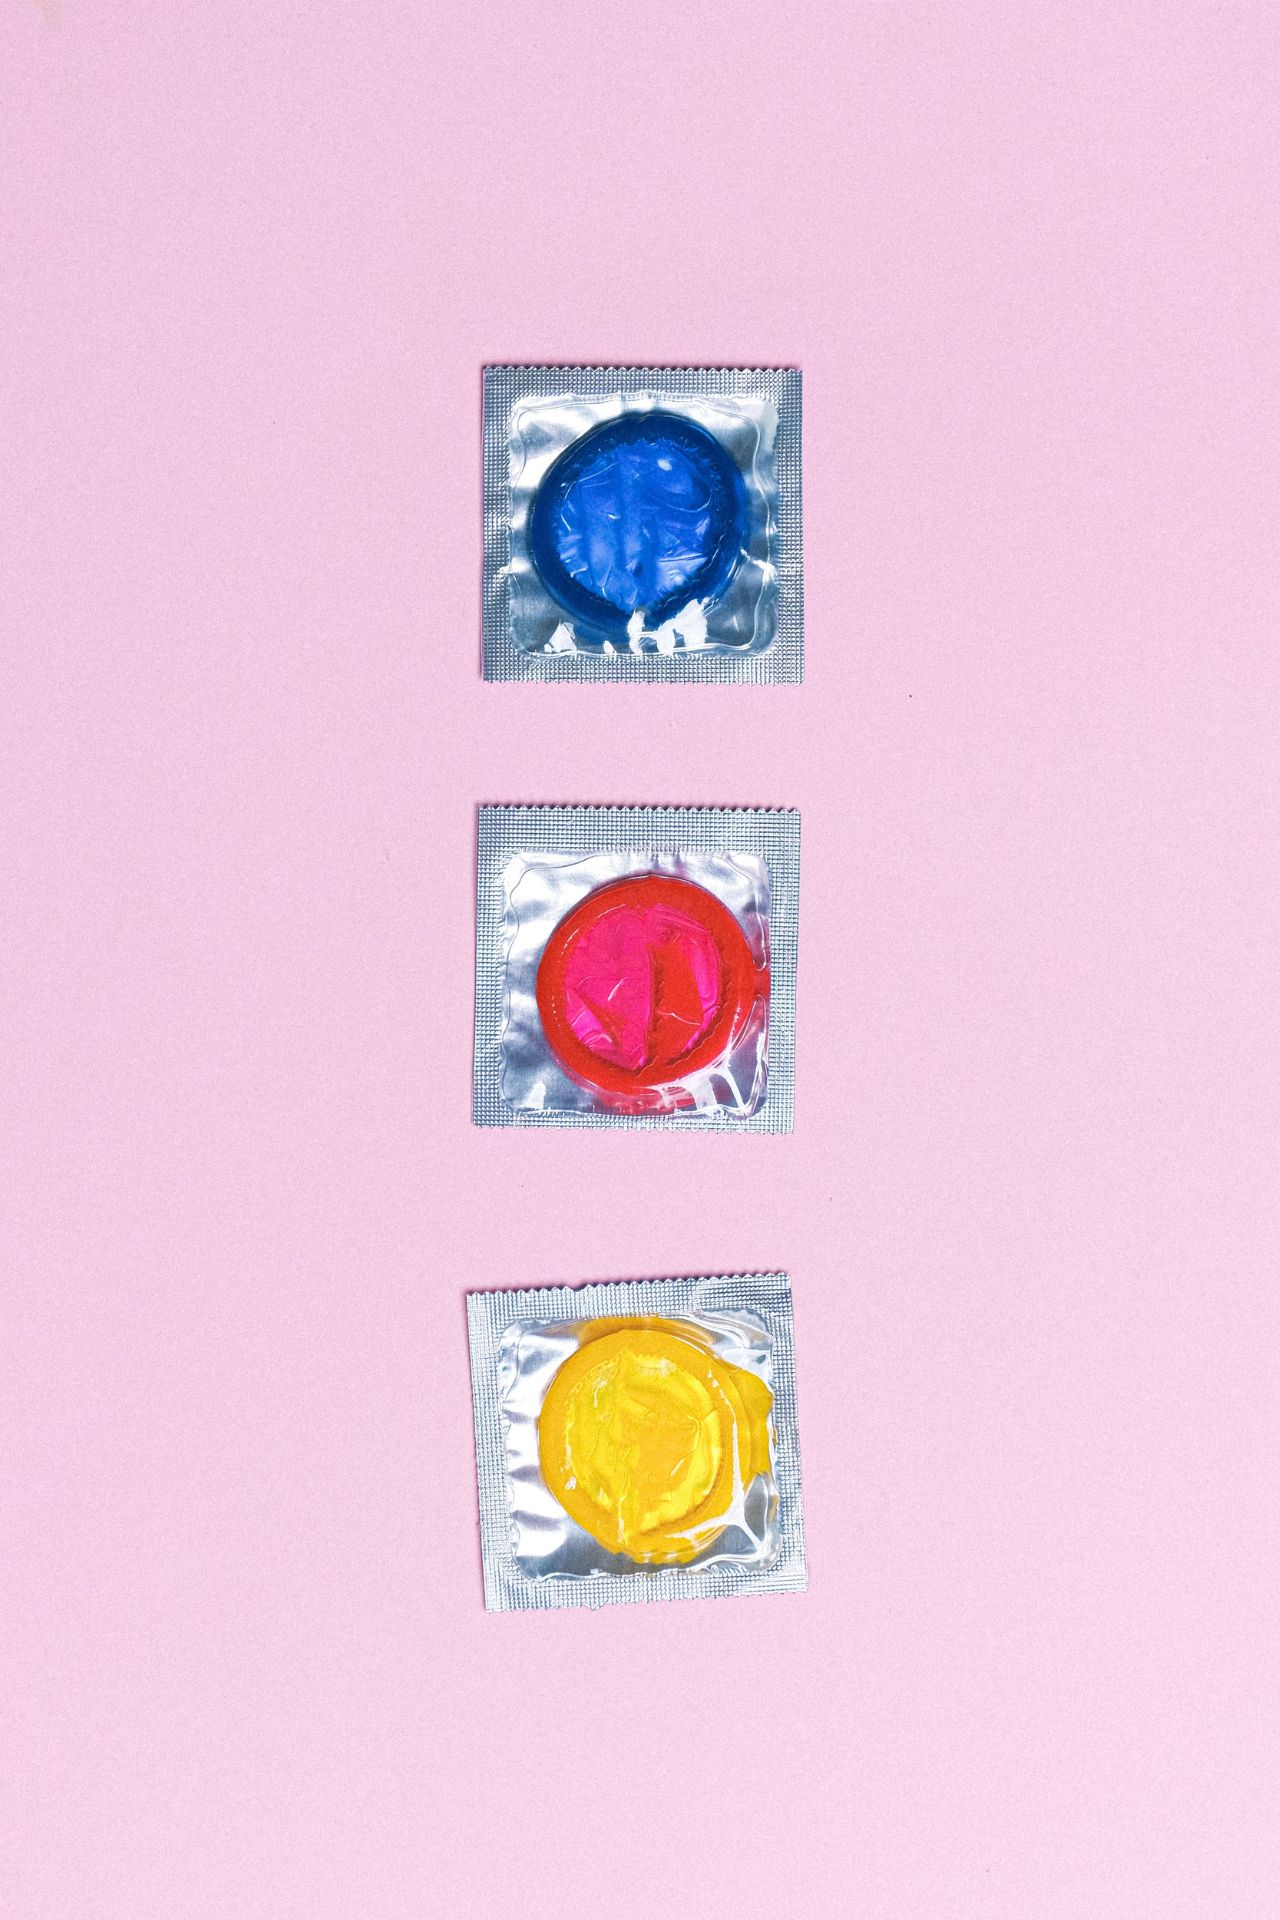 Verhütungsmittel im Vergleich Kondome